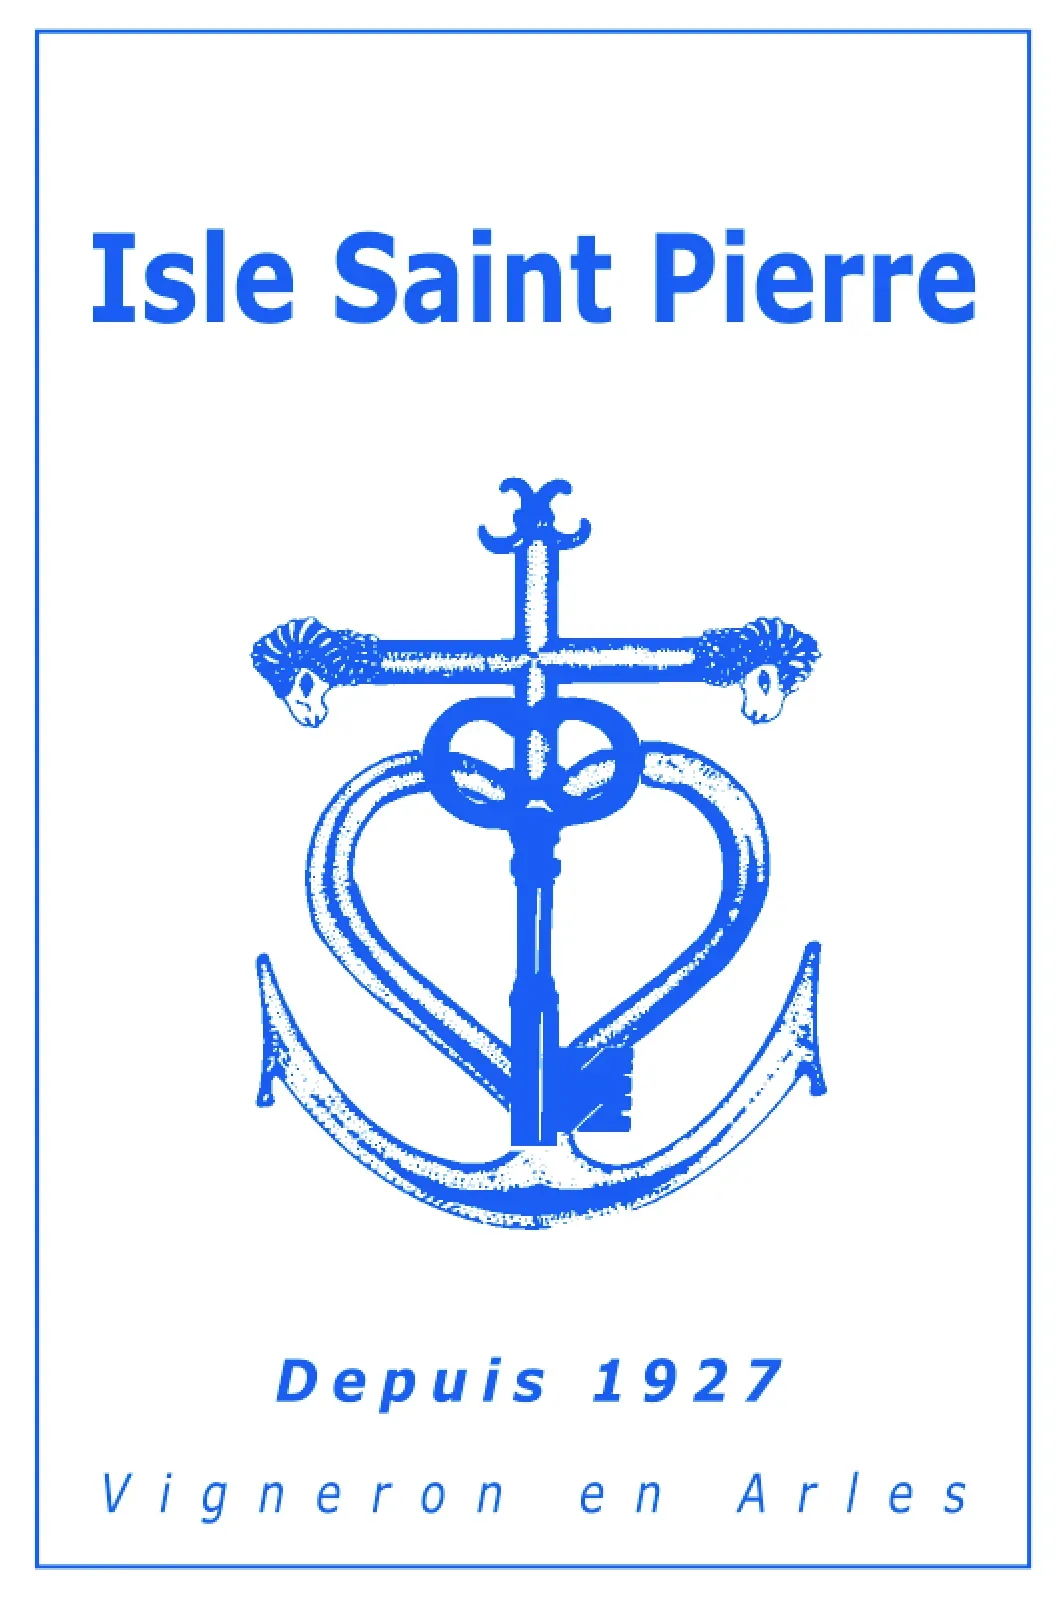 Isle Saint Pierre front label